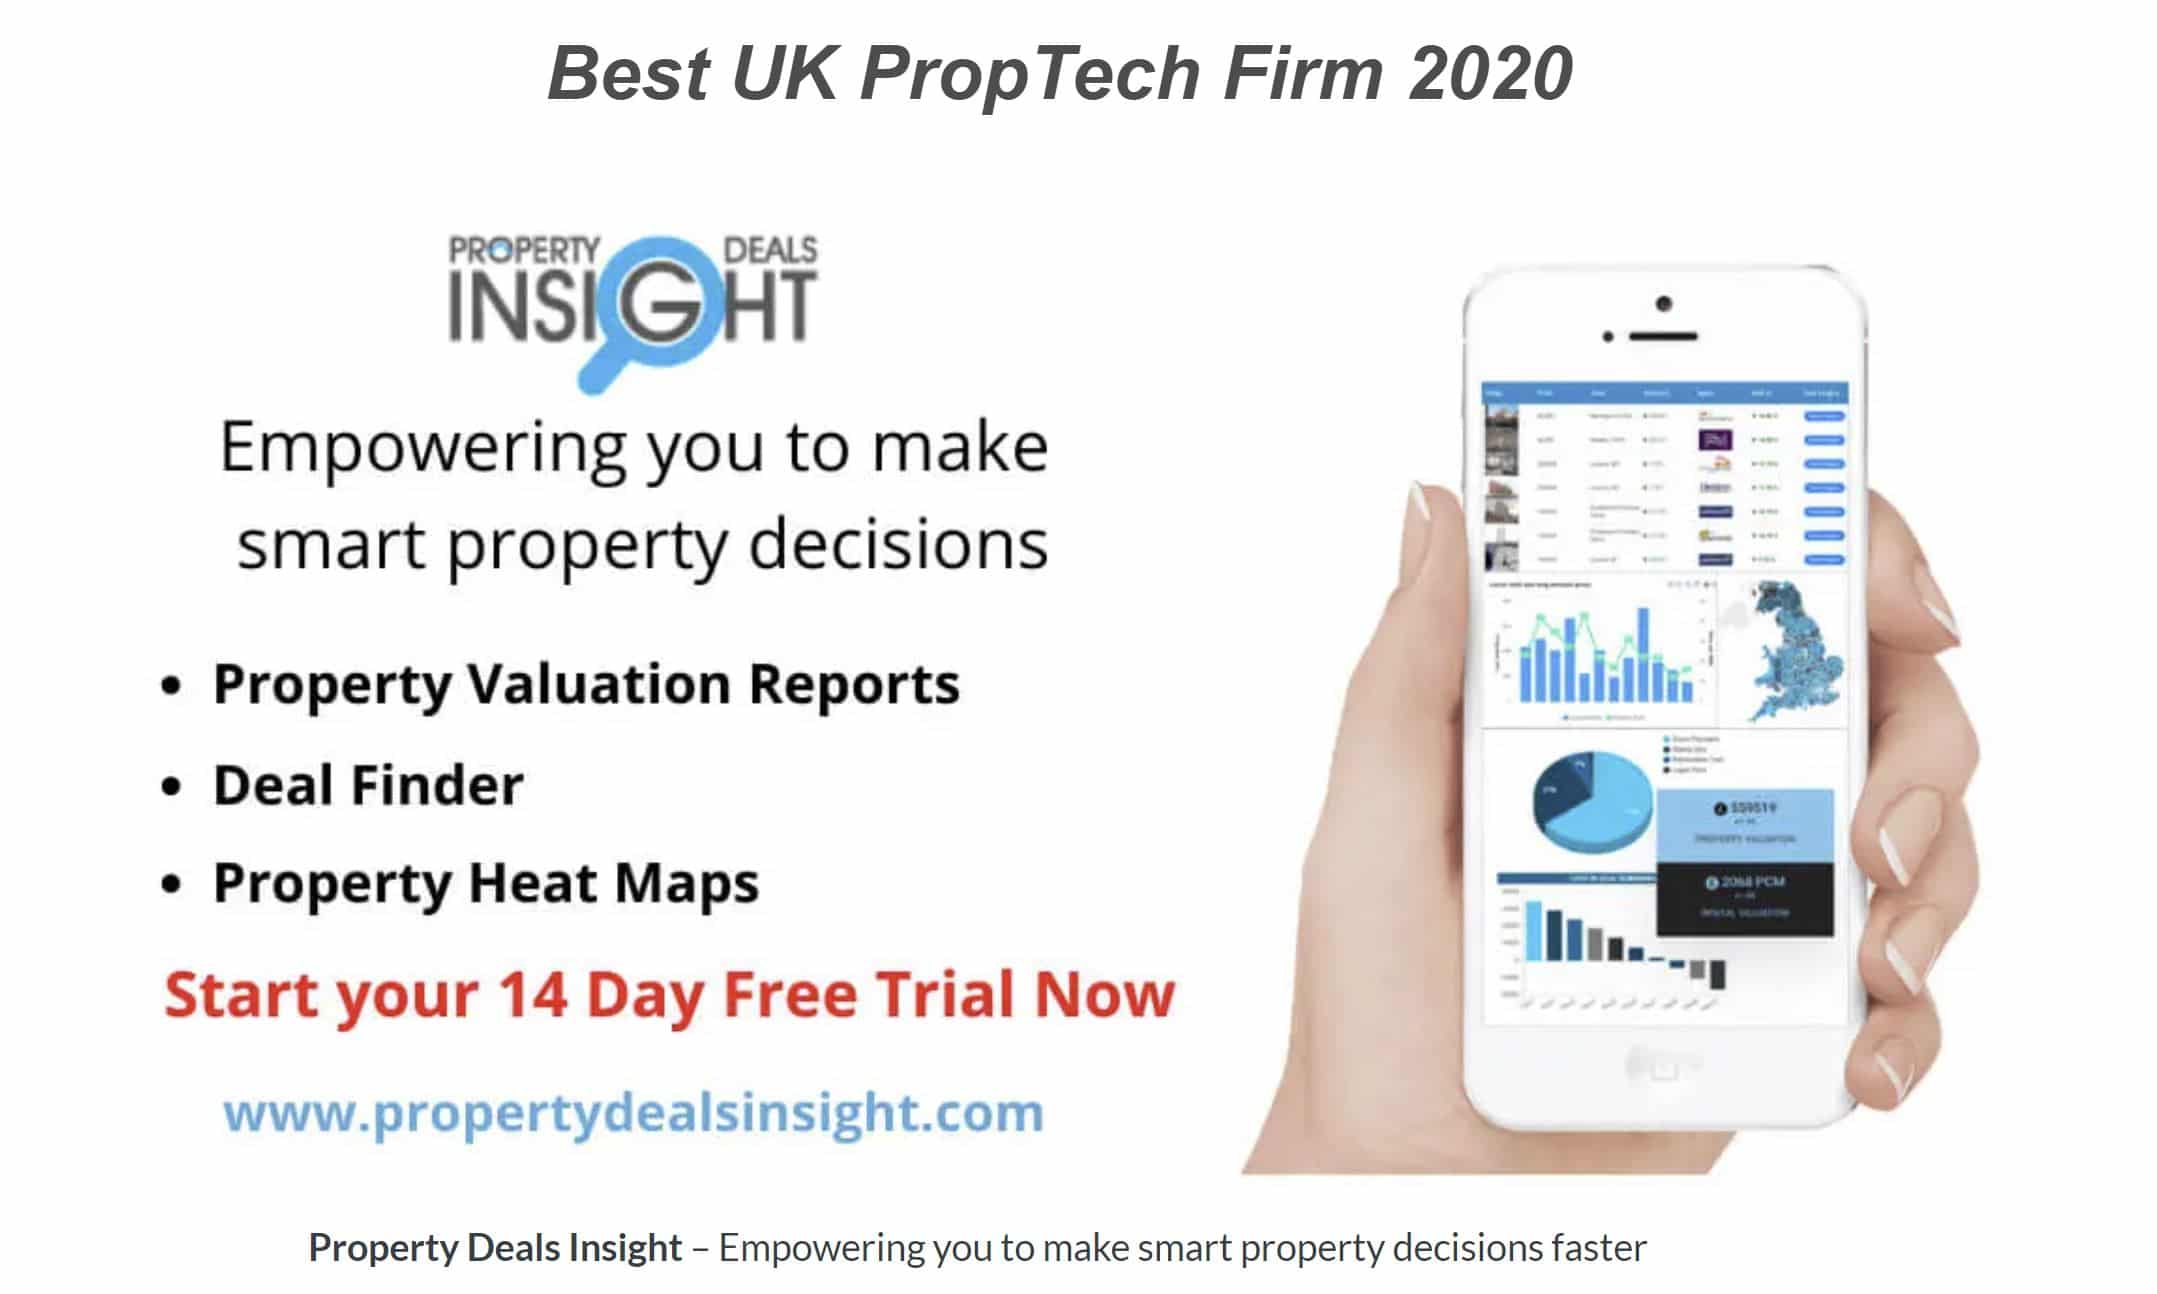 Winner of Best UK PropTech Firm 2020 - Property Deals Insight